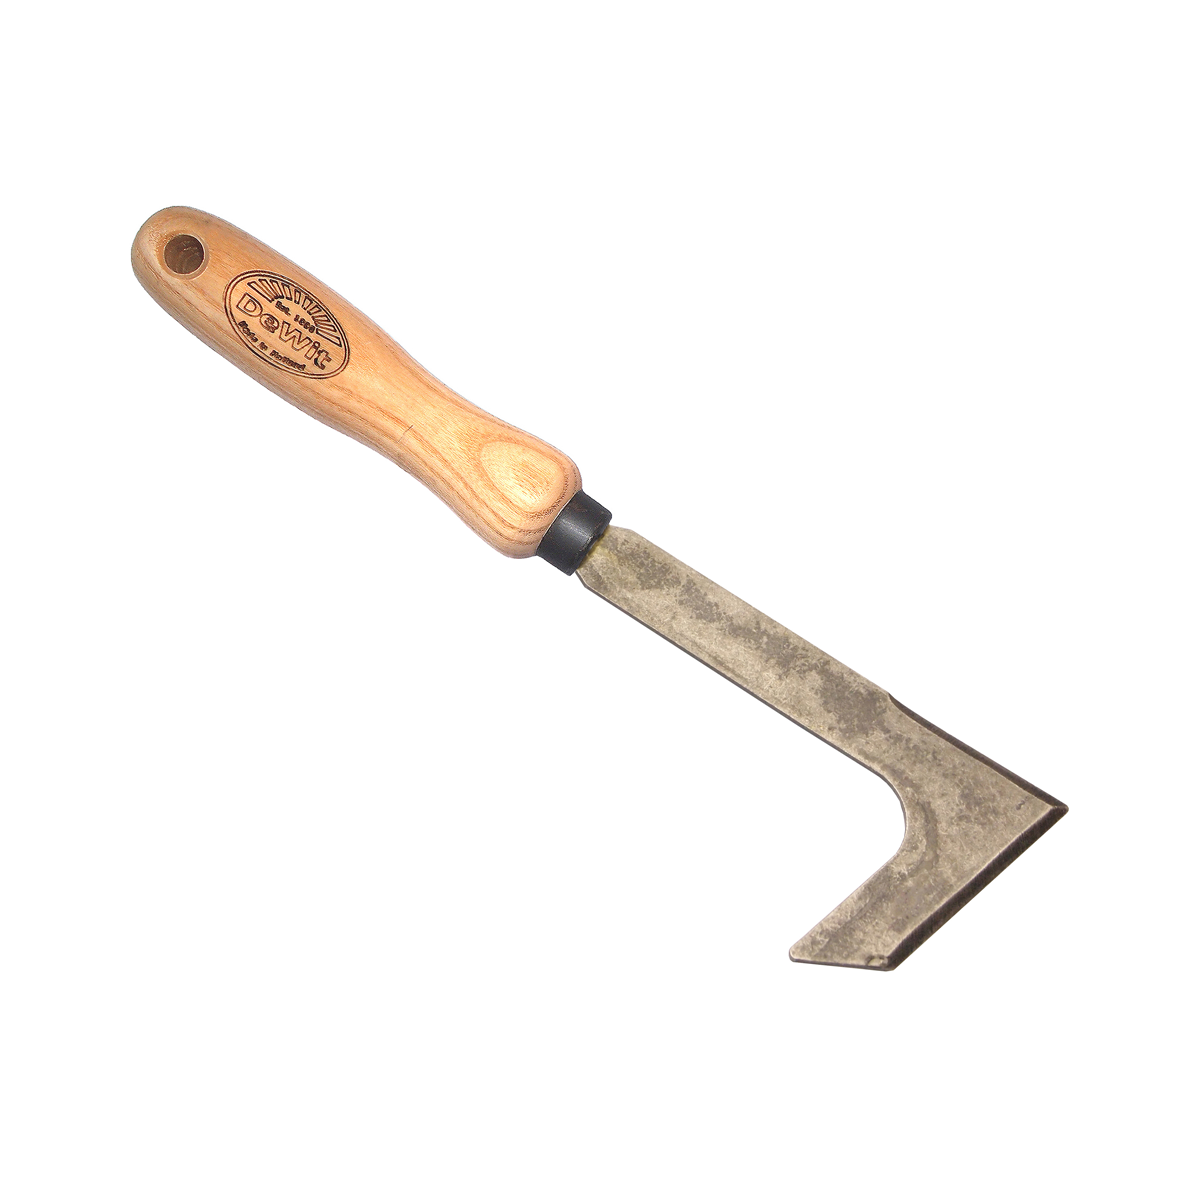 Renskniv / Ogräskniv, trähandtag